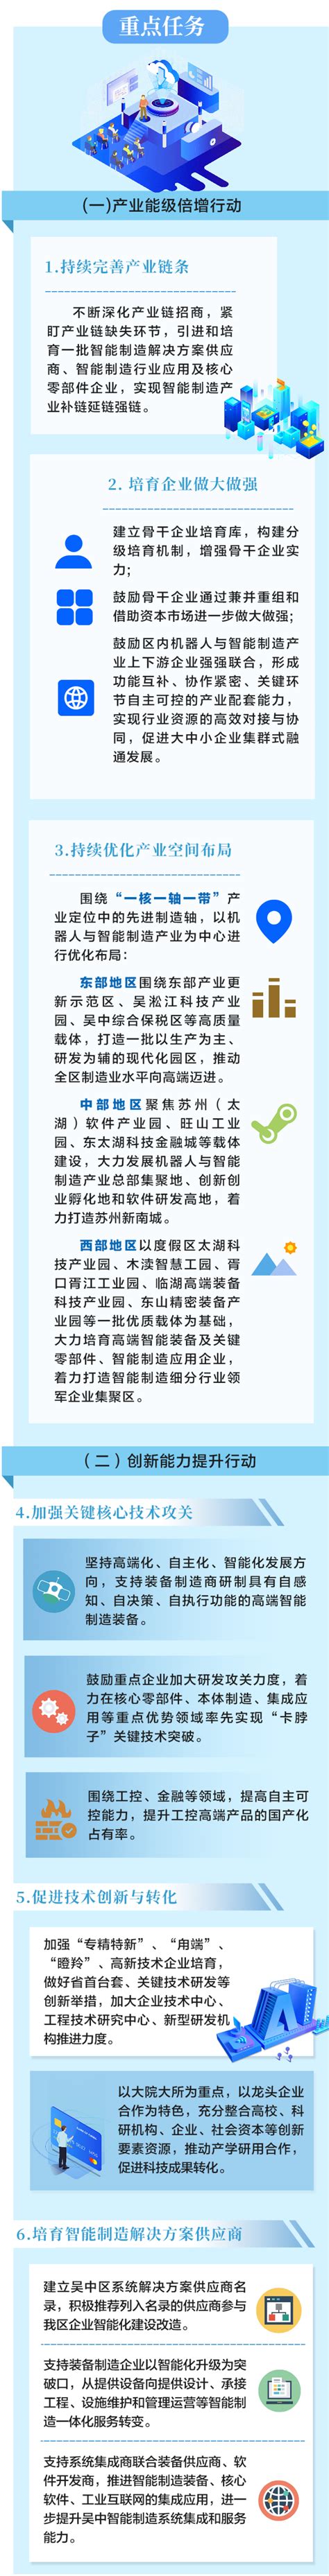 吴中区企业入选2020年度苏州市智能工厂公示名单 - 苏州市吴中区人民政府